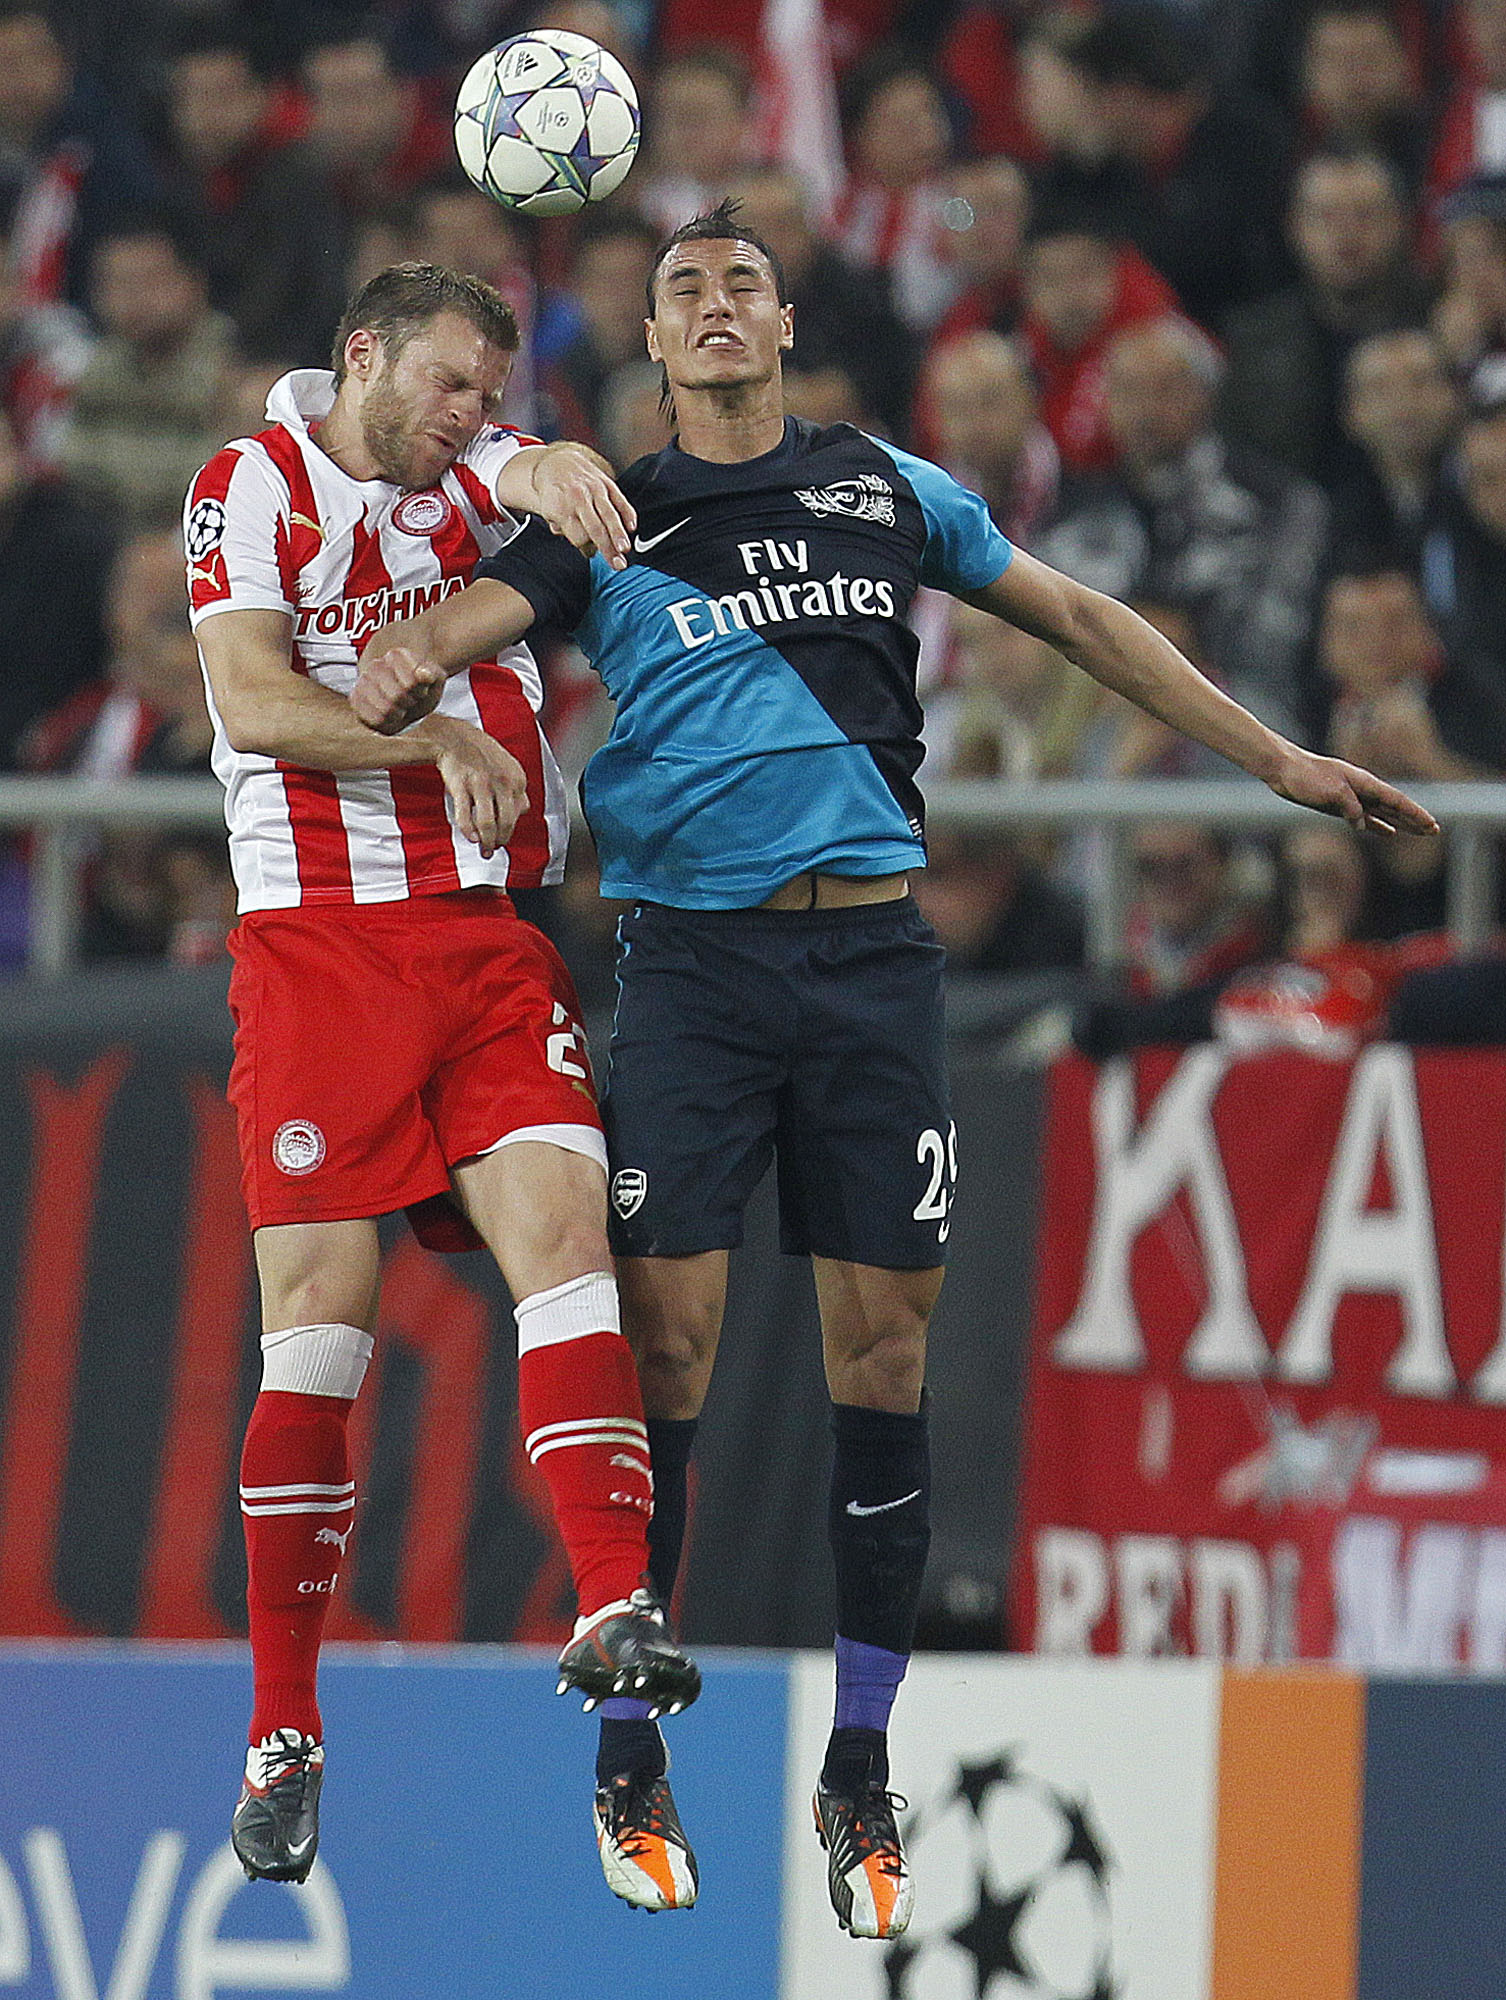 Olympiakos slog Arsenal med 3-1, men det räckte inte till avancemang.